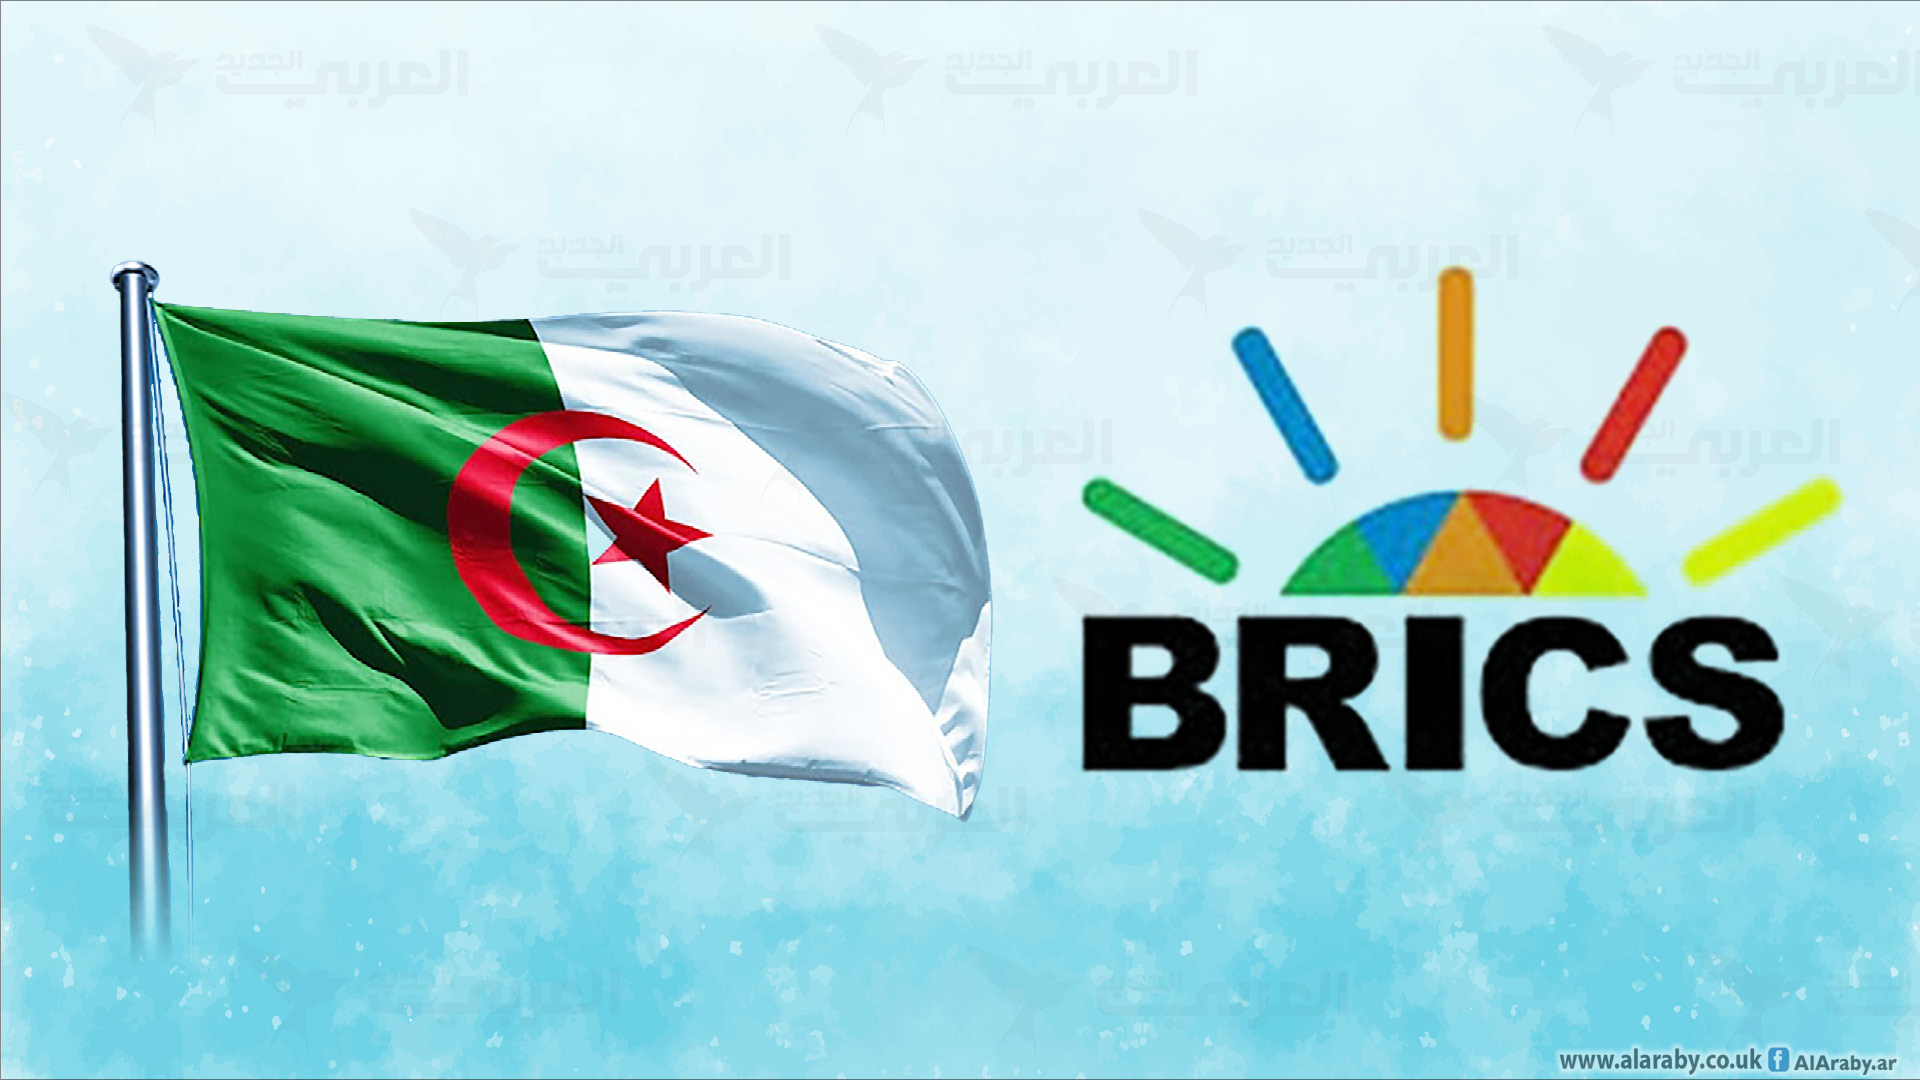 انضمام الجزائر إلى بريكس خيار استراتيجي؟